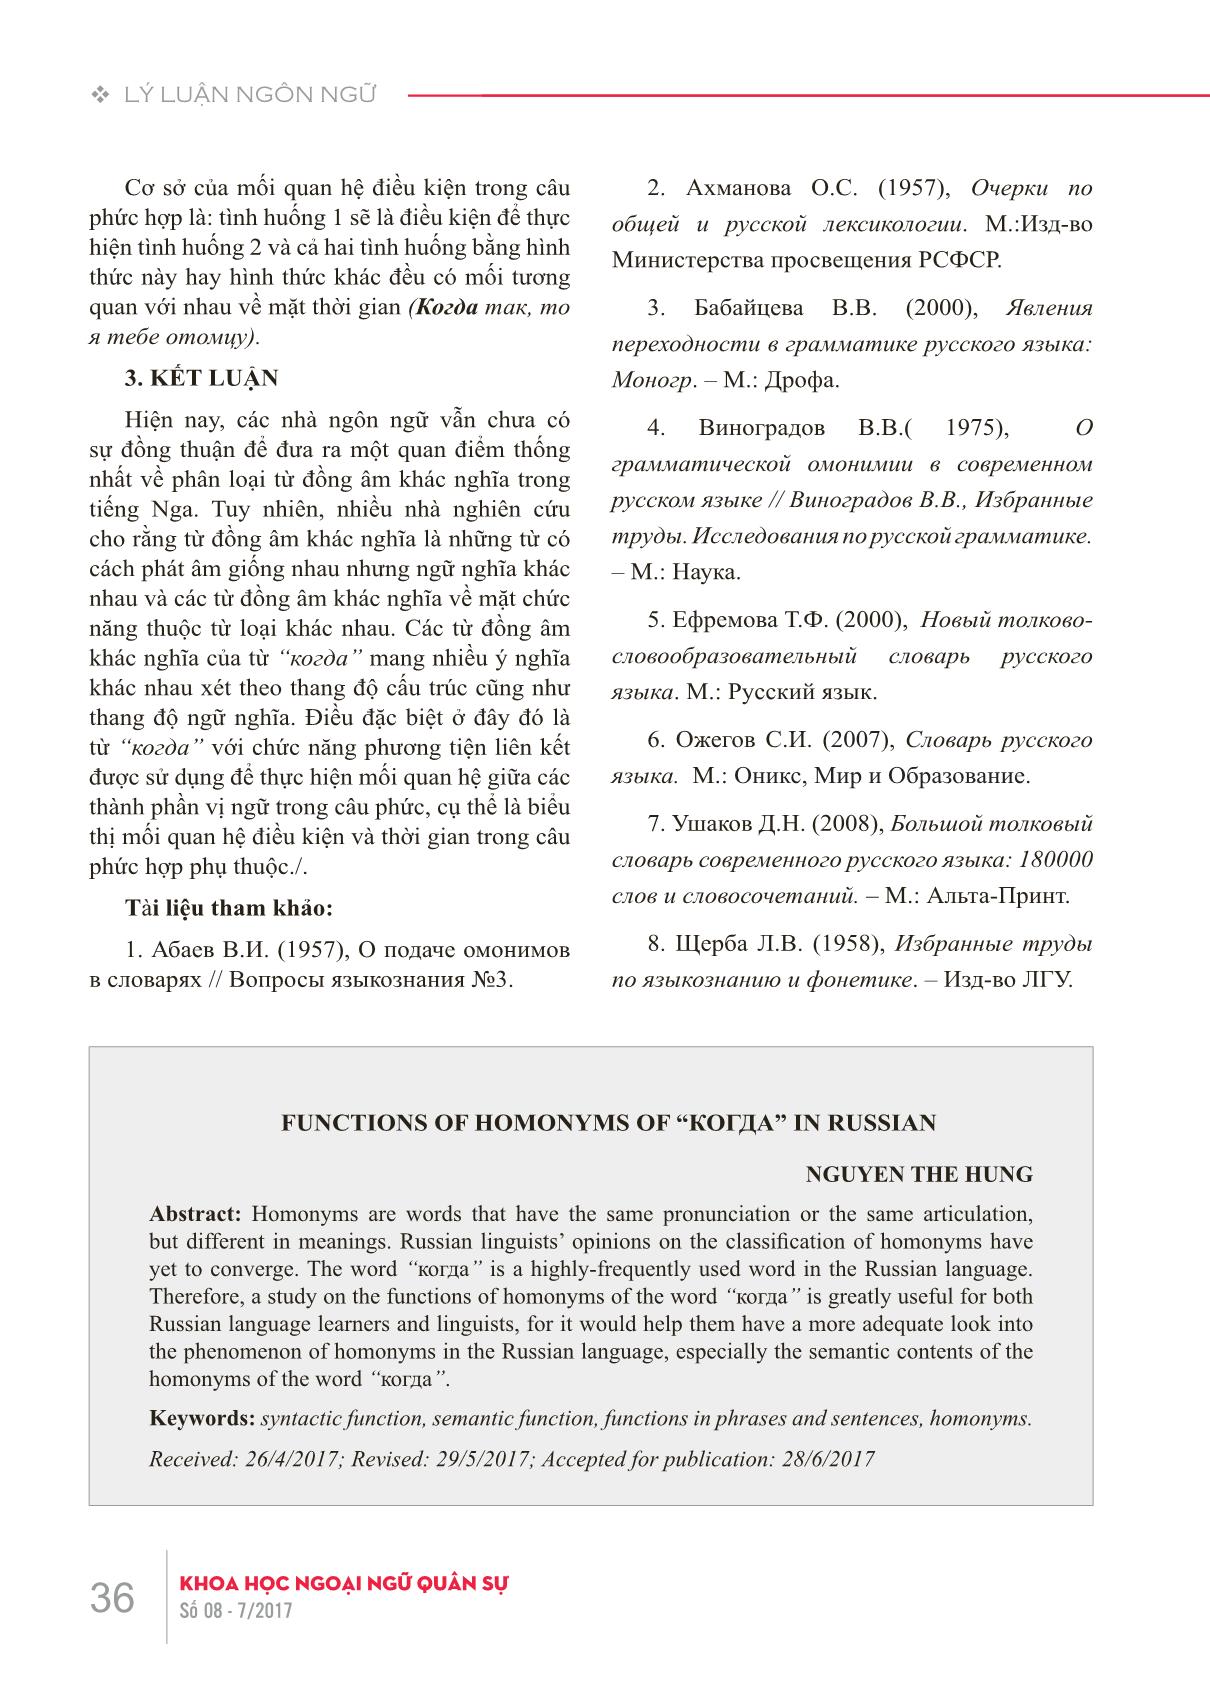 Hiện tượng đồng âm khác nghĩa của từ “когда” trong tiếng Nga từ góc độ chức năng trang 5